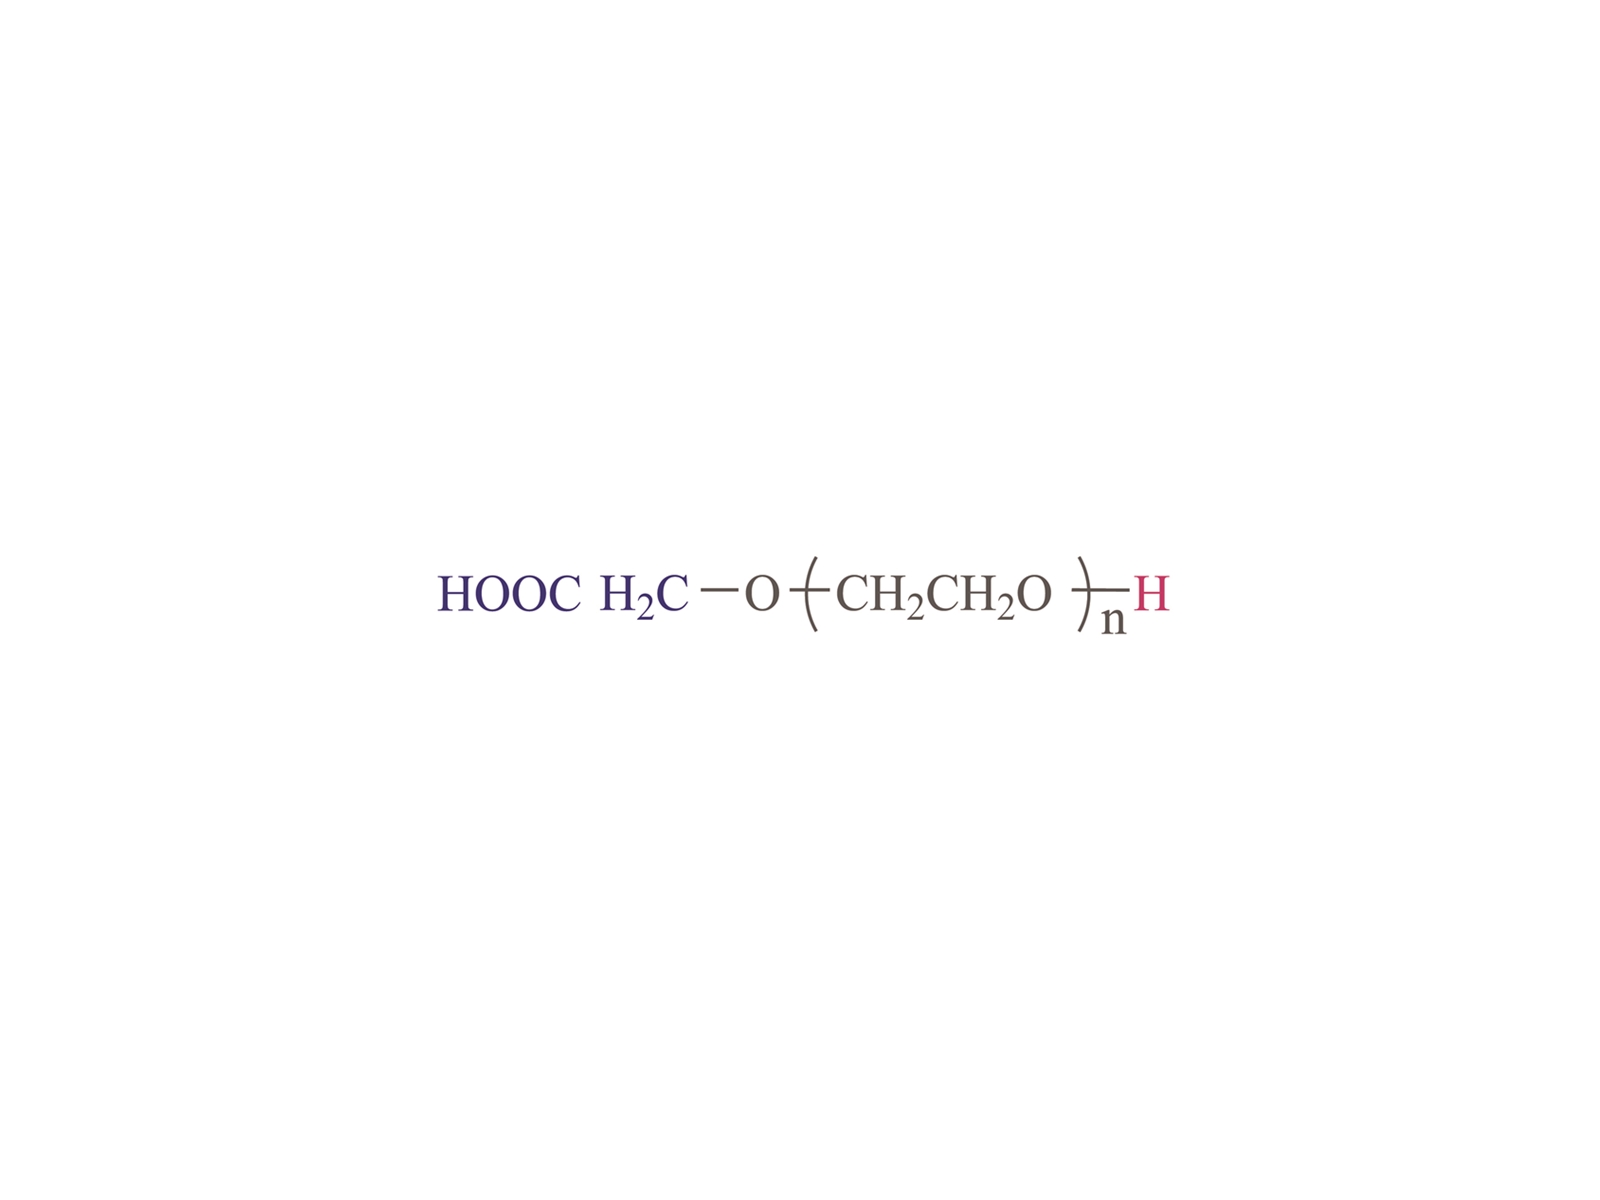 α-carbossil-ω-hydroxyl poly (glicole di etilene) [Hooc-PEG-OH]